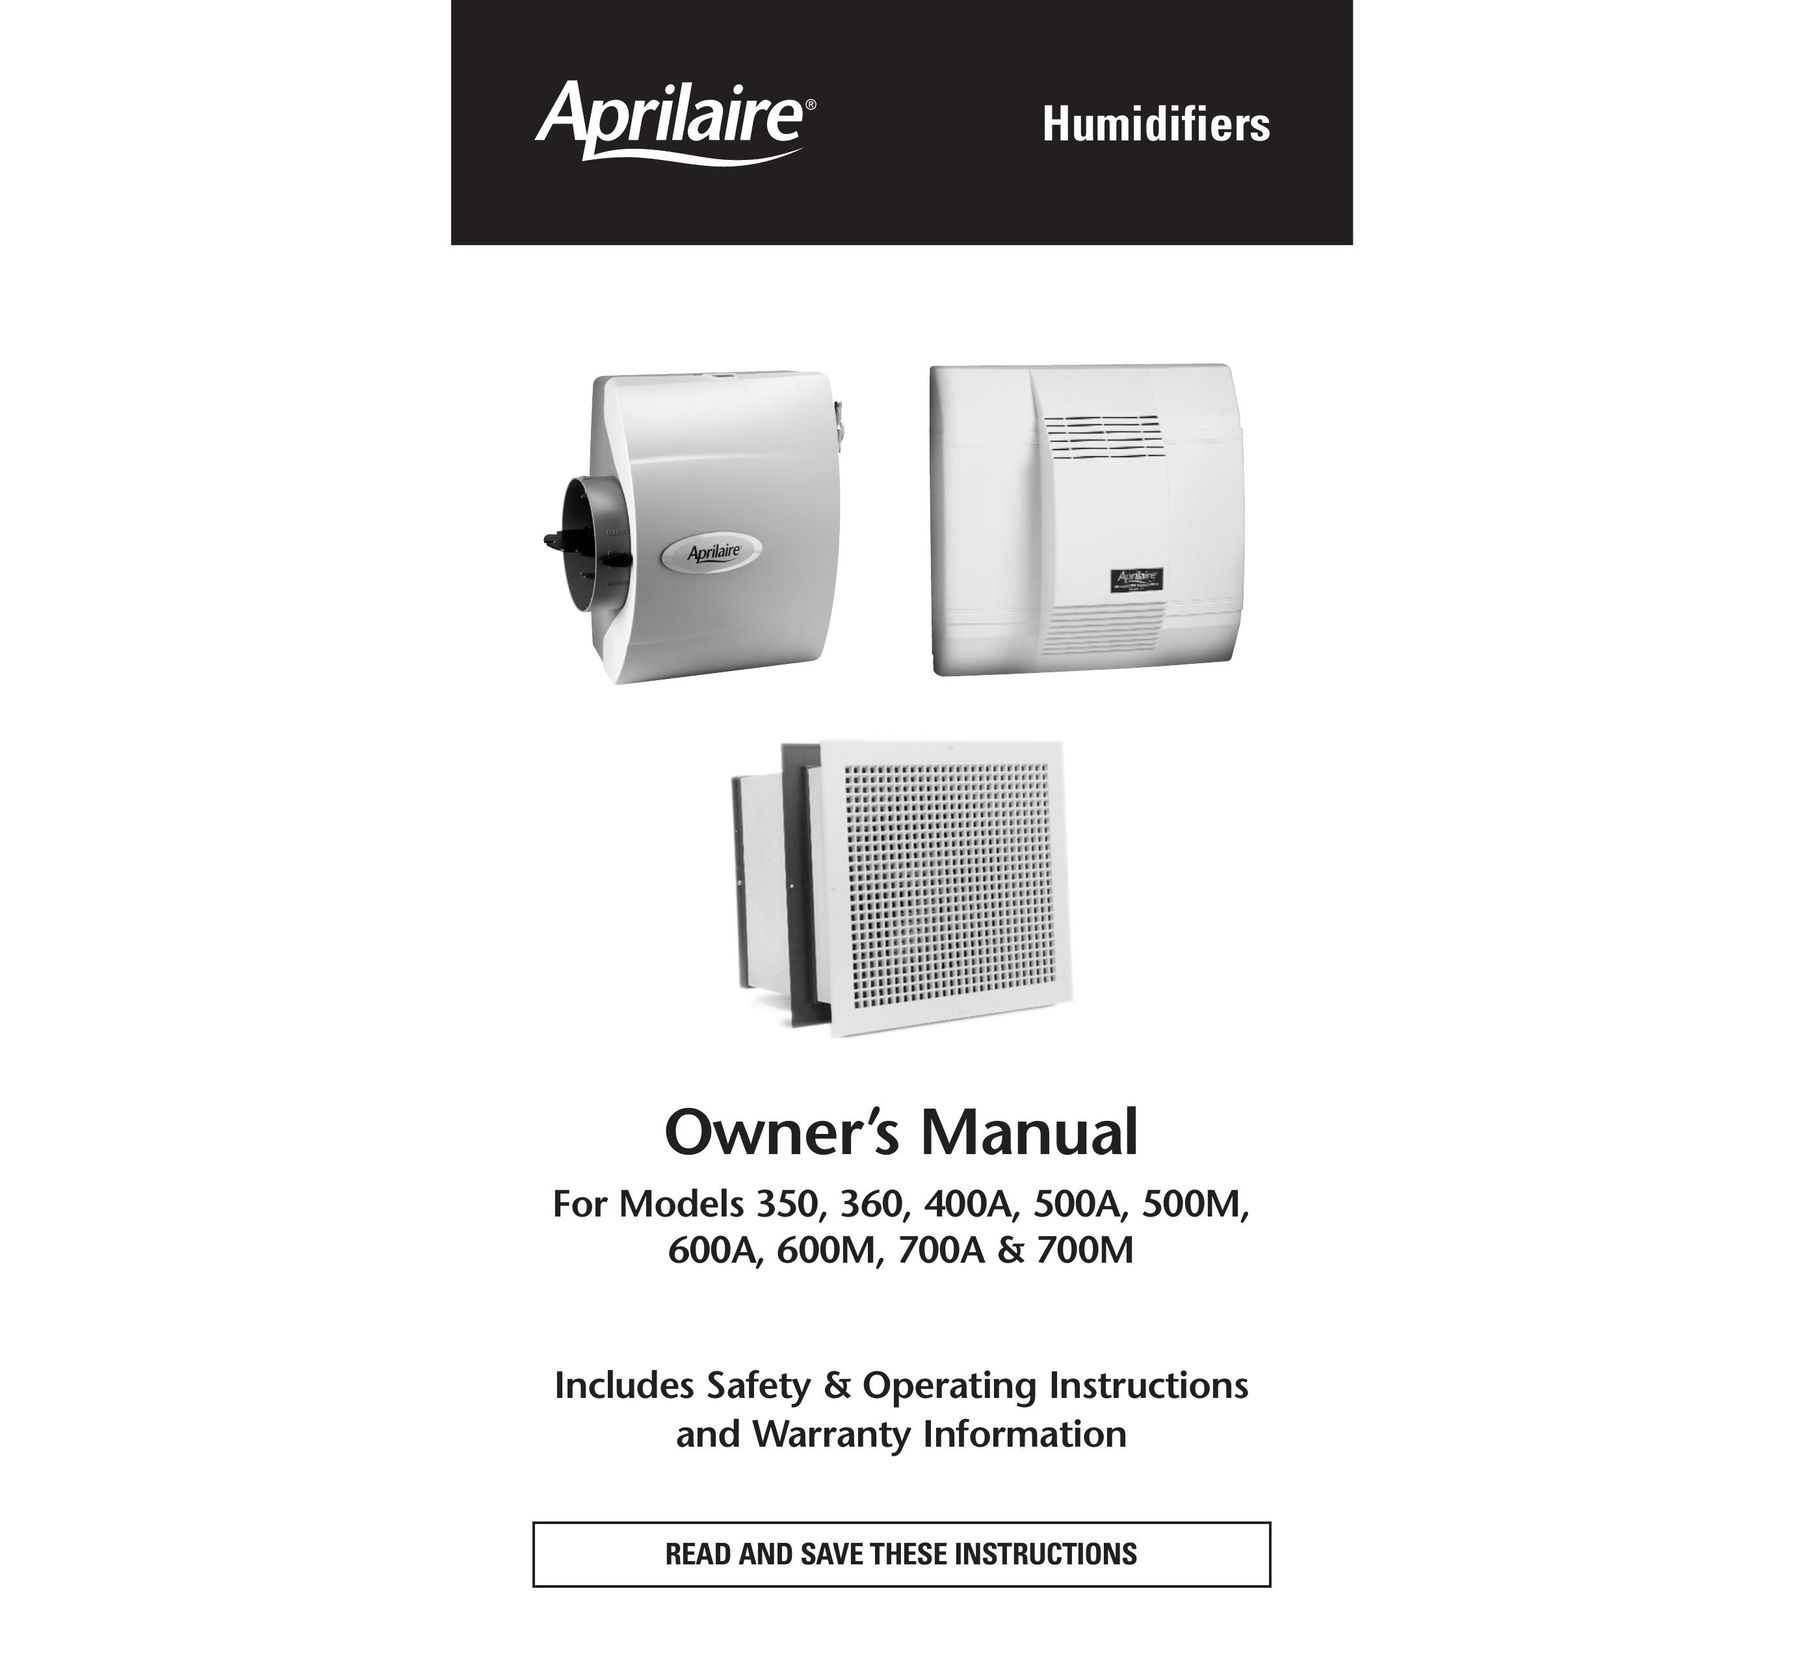 Aprilaire 700A Dehumidifier User Manual